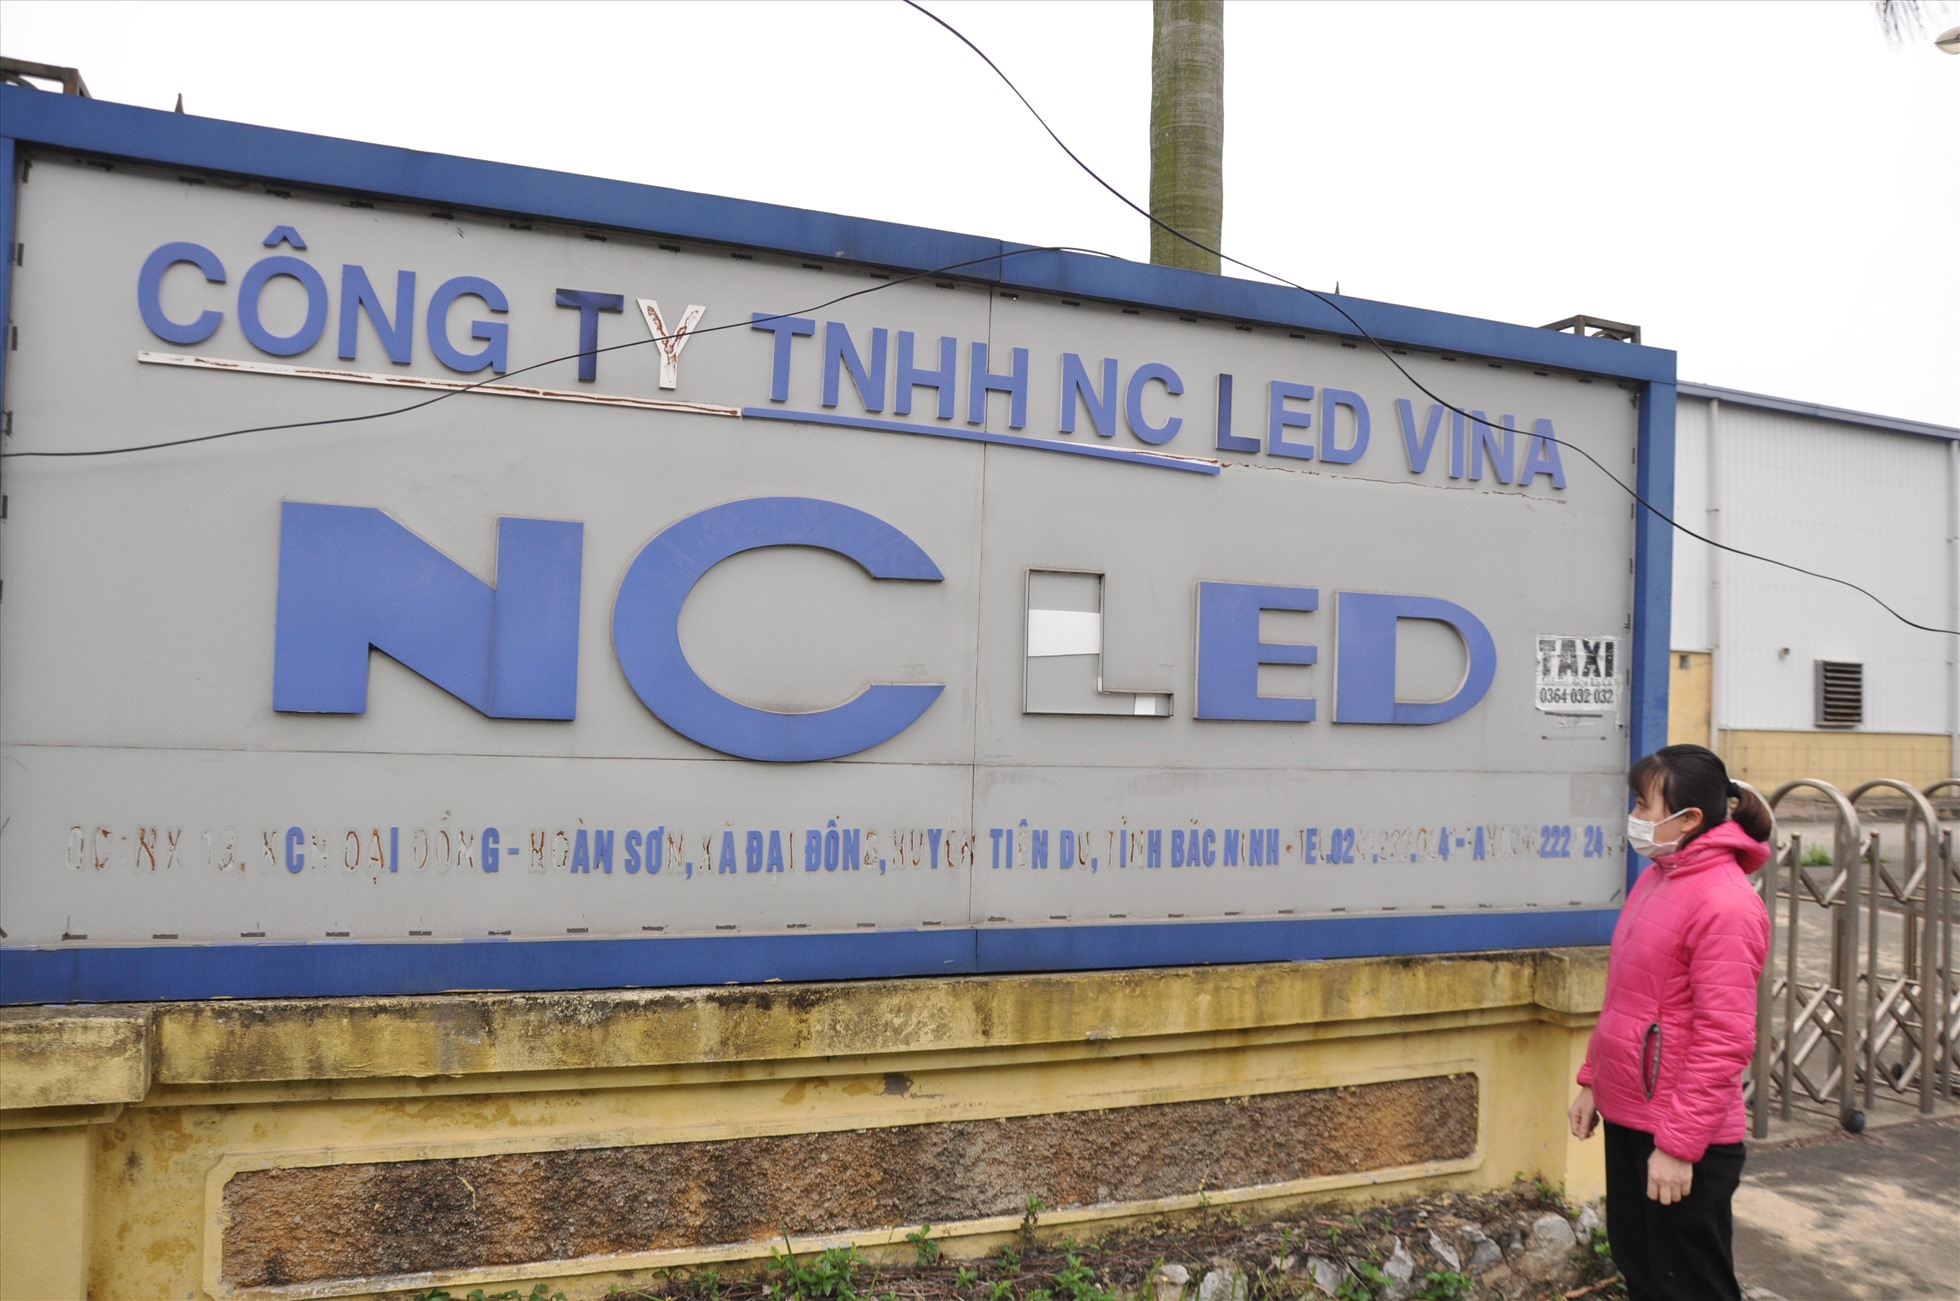 Công ty TNHH NC LED Vina (Bắc Ninh) nợ lương, bảo hiểm xã hội tháng 4.2020 của người lao động từ thời điểm dừng hoạt động (tháng 5.2020) đến nay. Ảnh: Bảo Hân